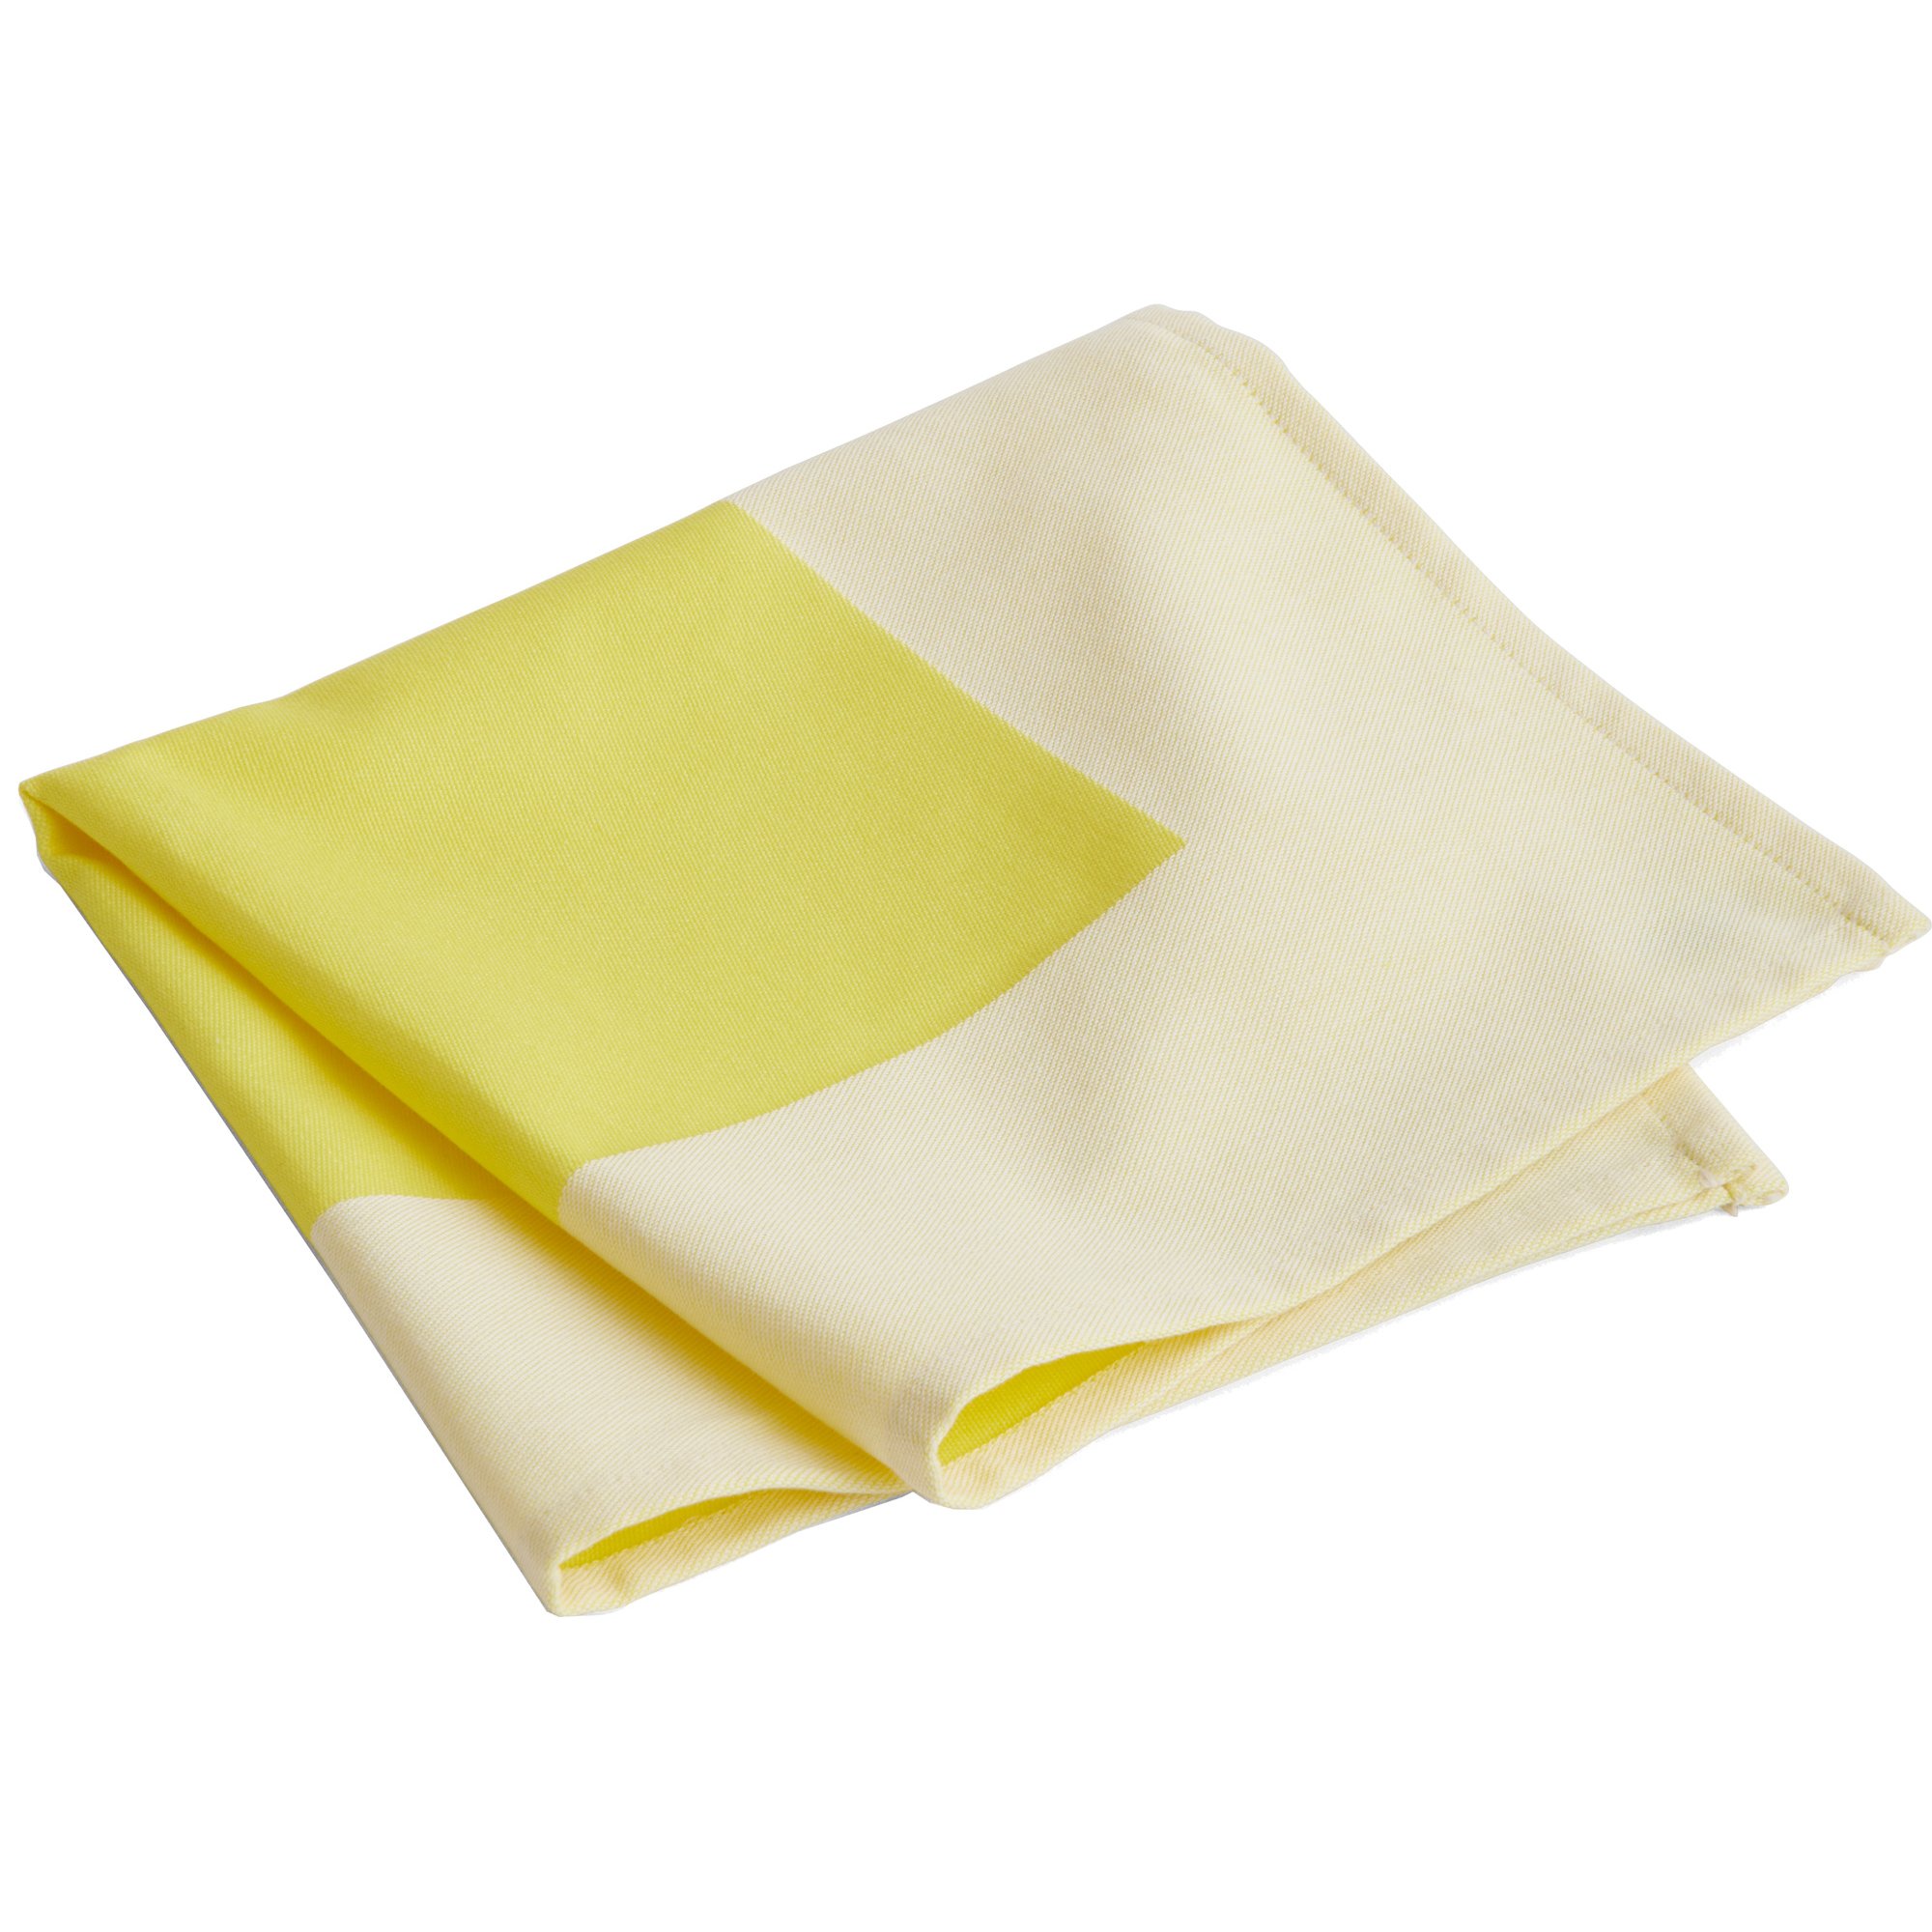 HAY Ram serviet gul